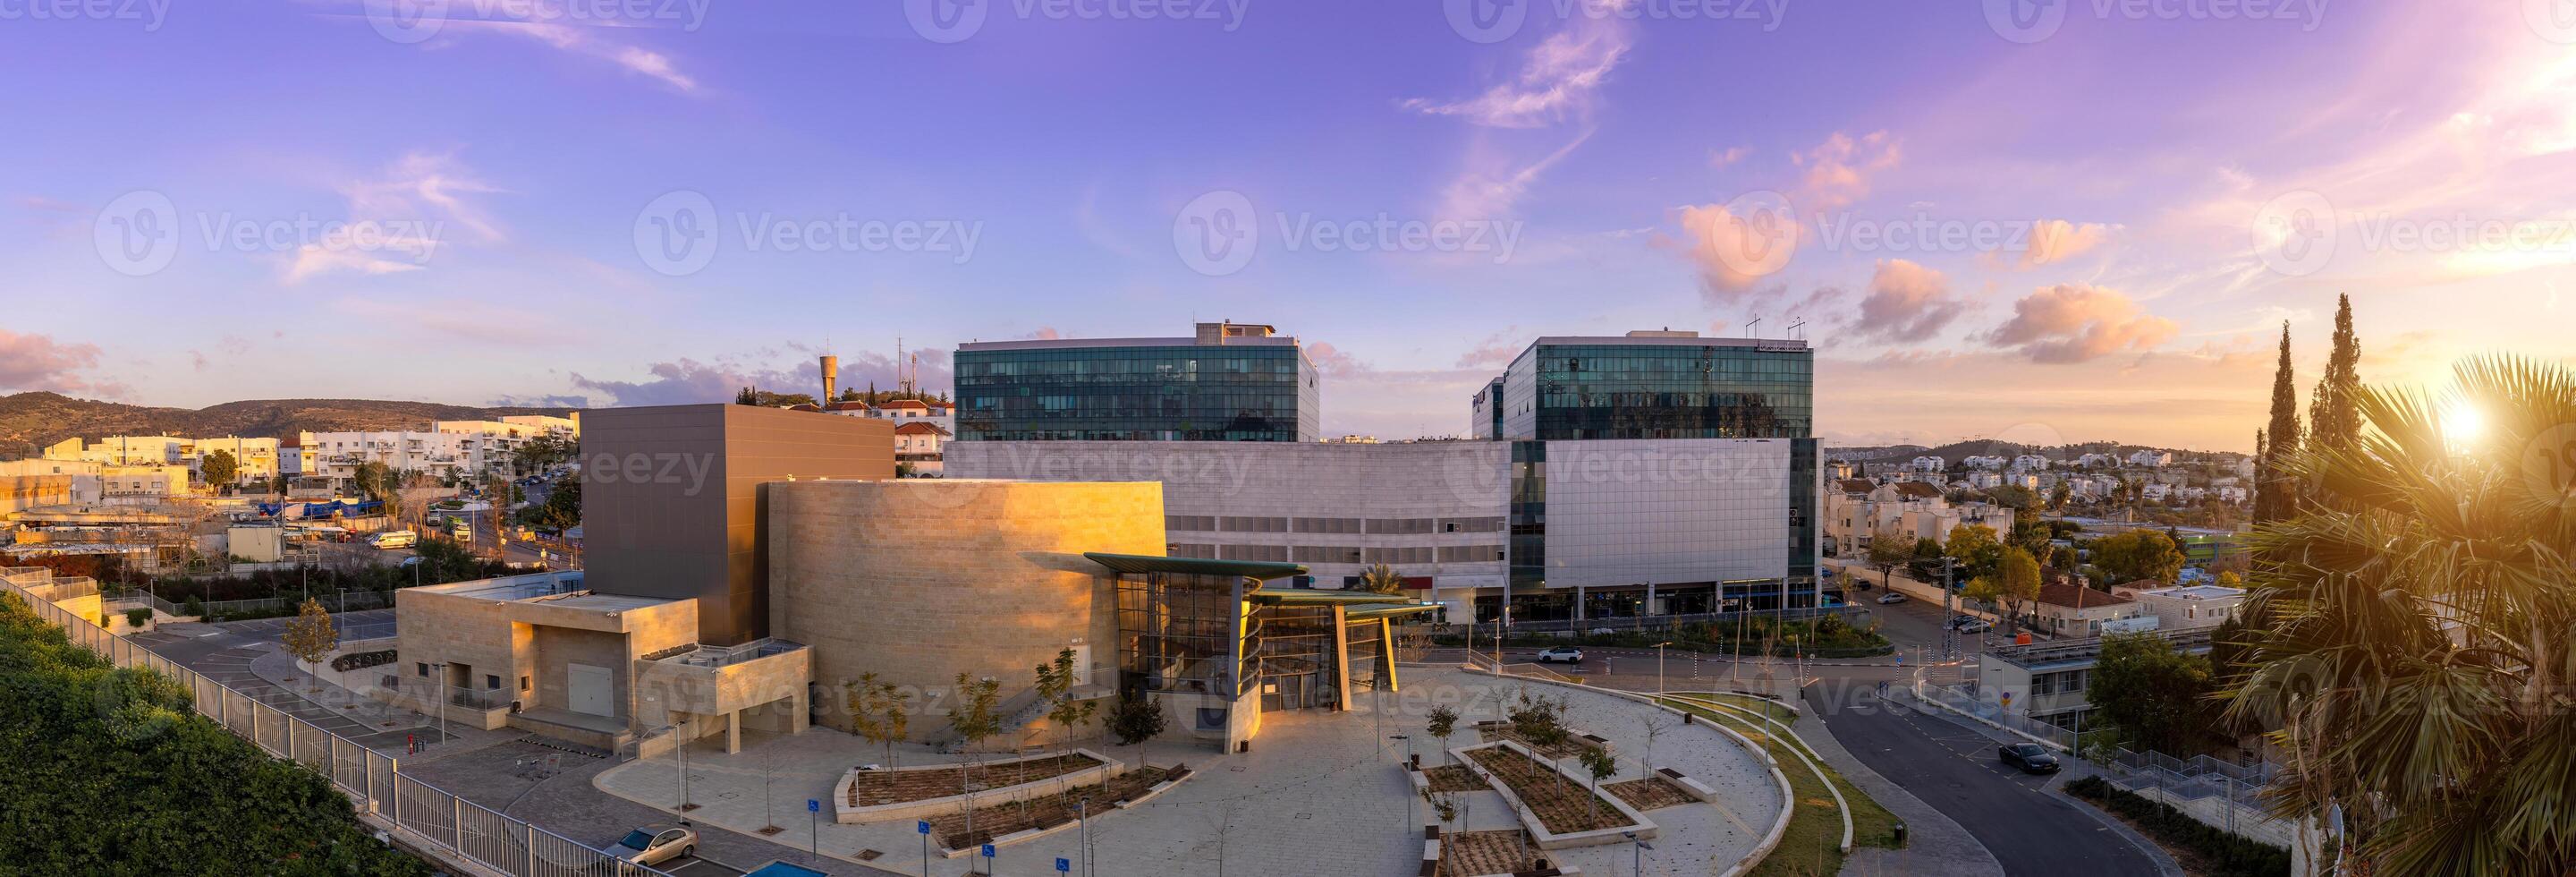 Wette Shemesh, heichal ein tarbut Kultur Center Gebäude und sei es Shemesh Gemeinde Panorama foto